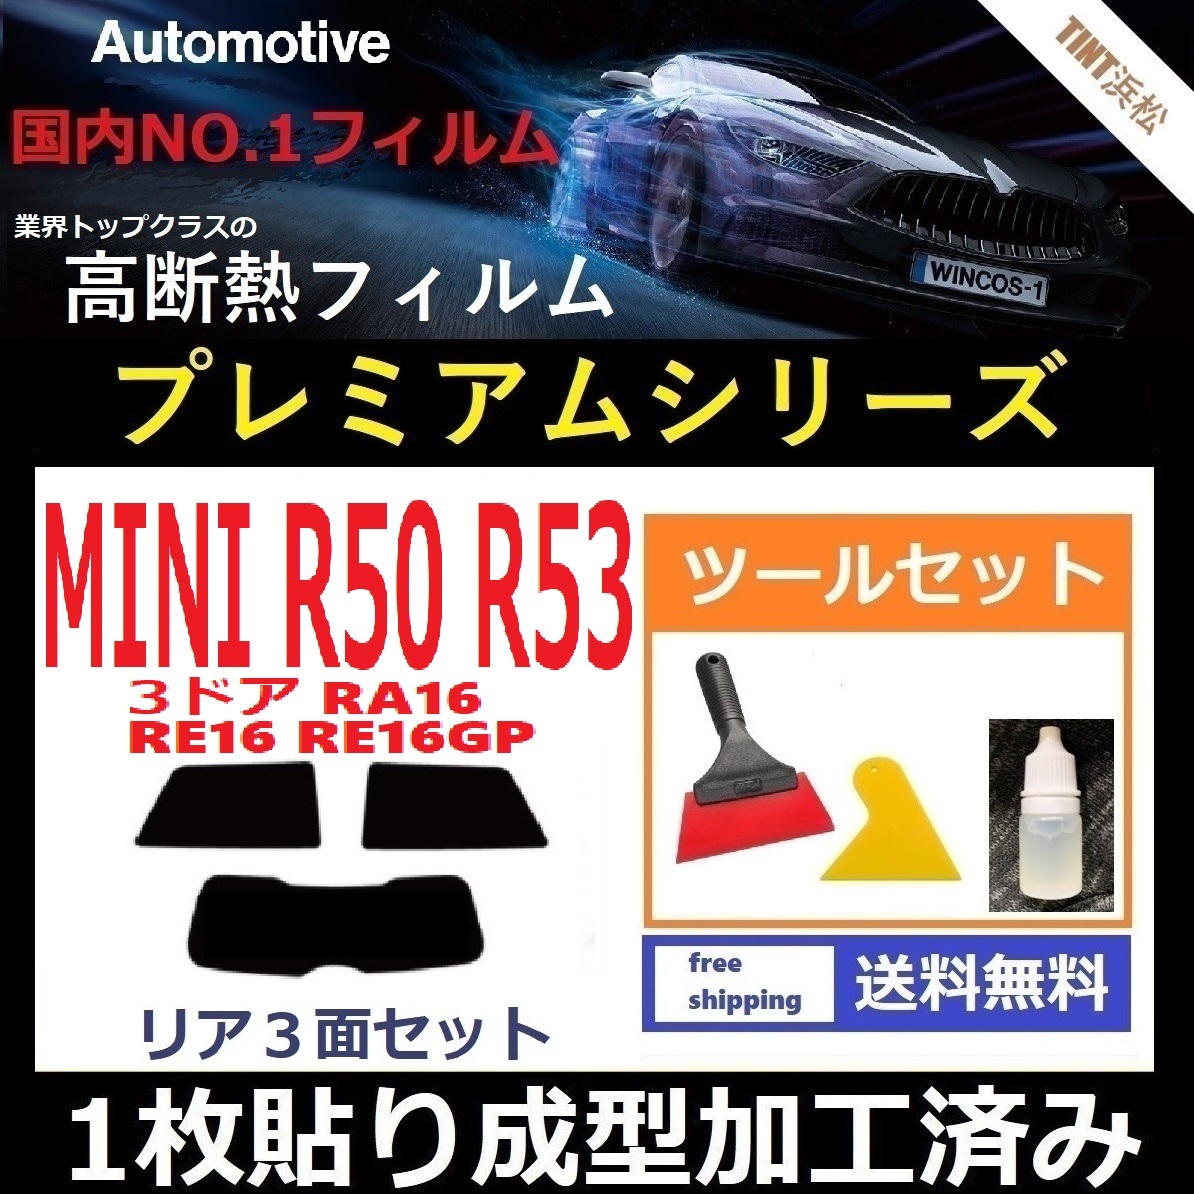 １枚貼り成型加工済みフィルム MINI ミニ 3ドア RA16 RE16 RE16GP 【WINCOS プレミアムシリーズ】ツールセット付き ドライ成型 R50 R53